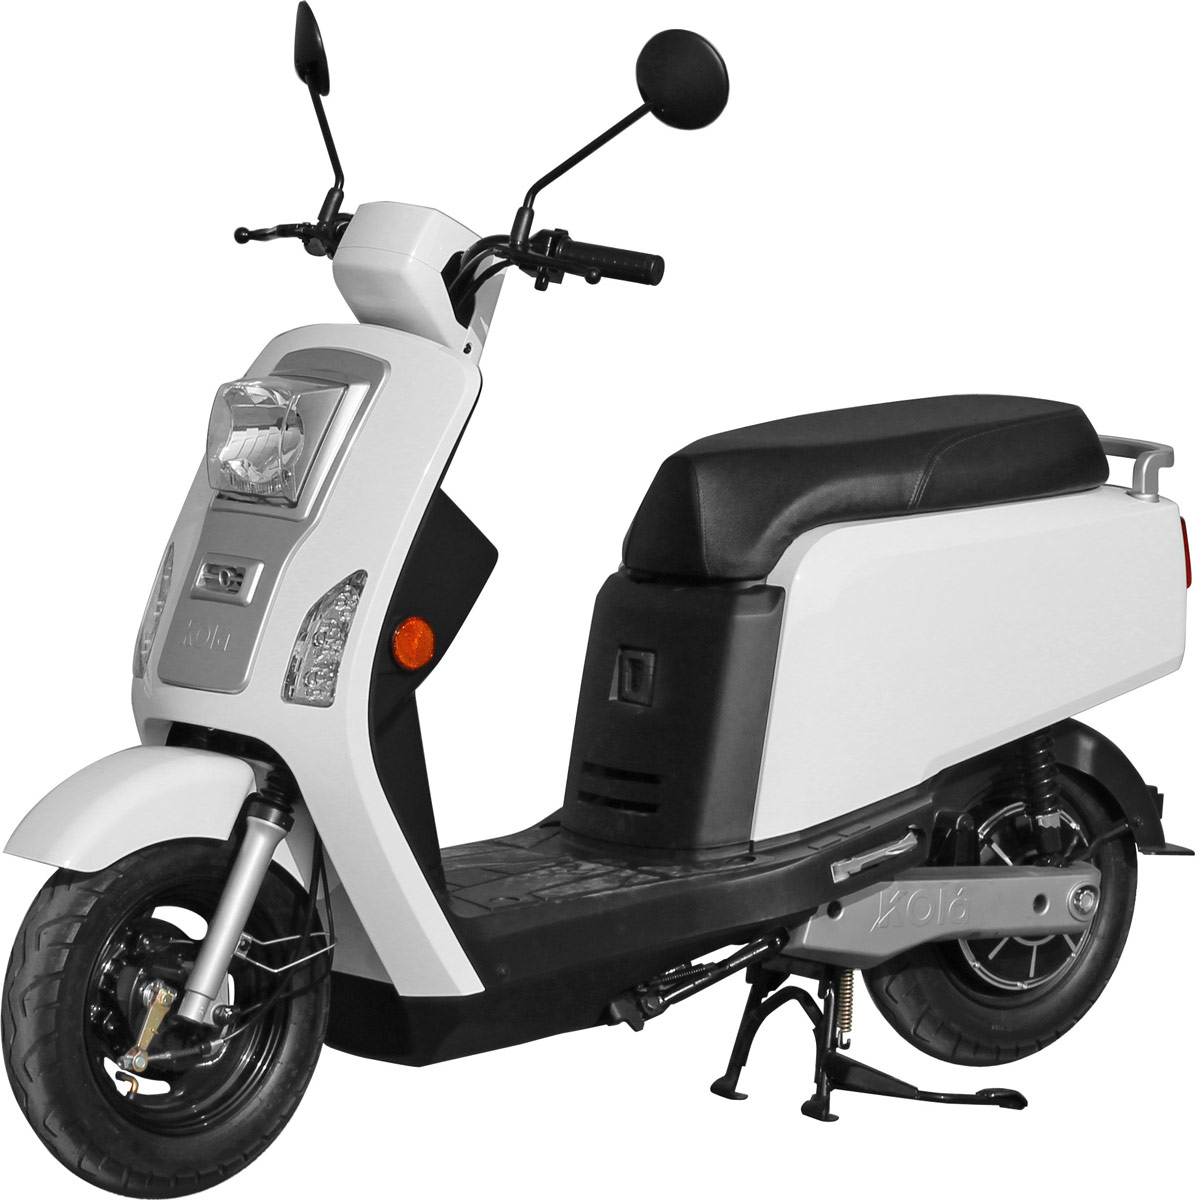 Le Kolà est un scooter électrique urbain assimilé 50cm3